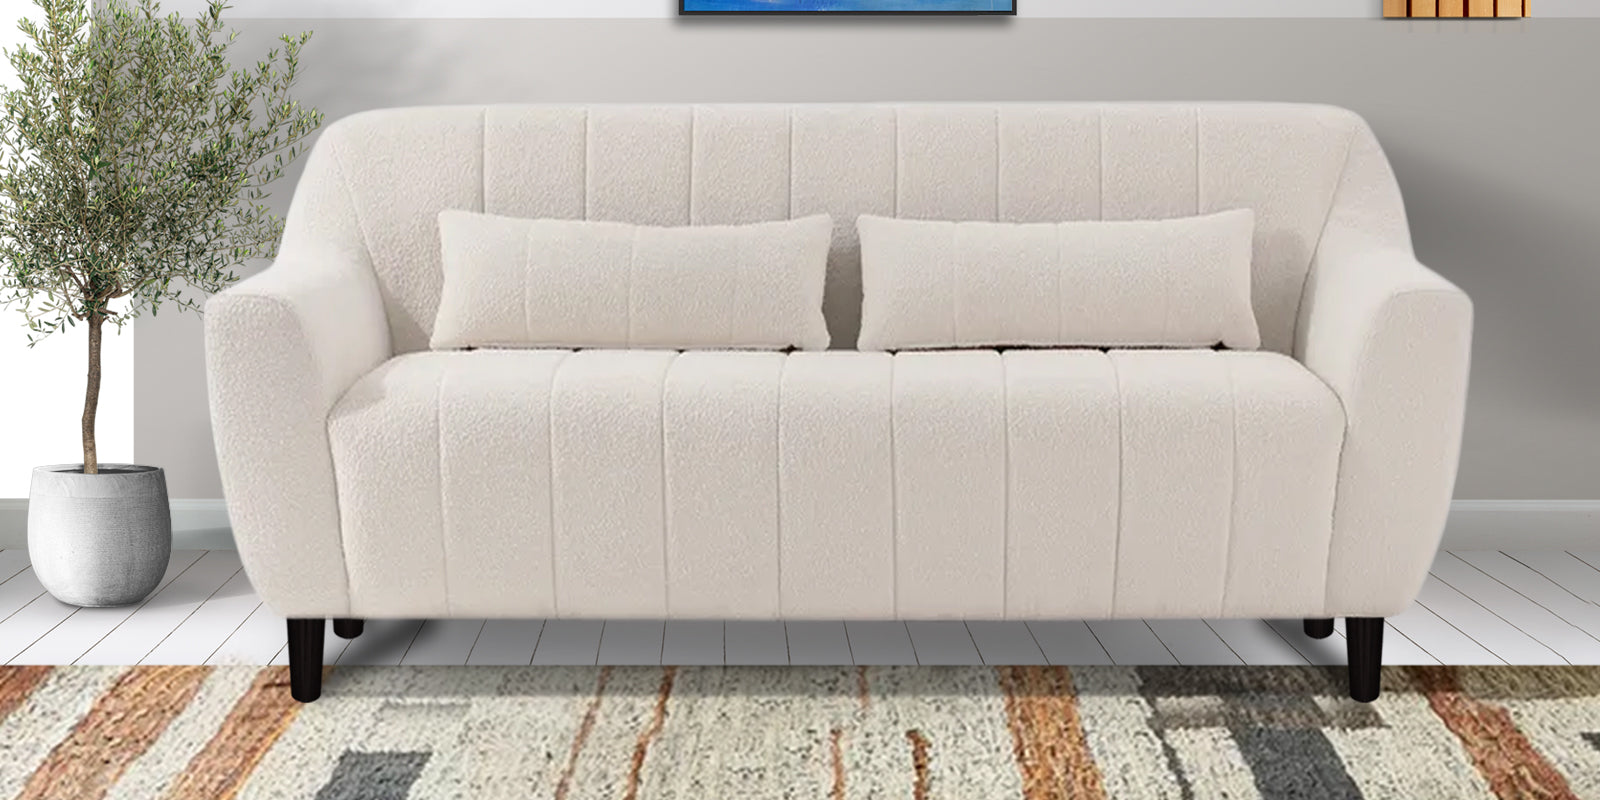 Nesco Fur Fabric 2 Seater Sofa in Bright White Colour